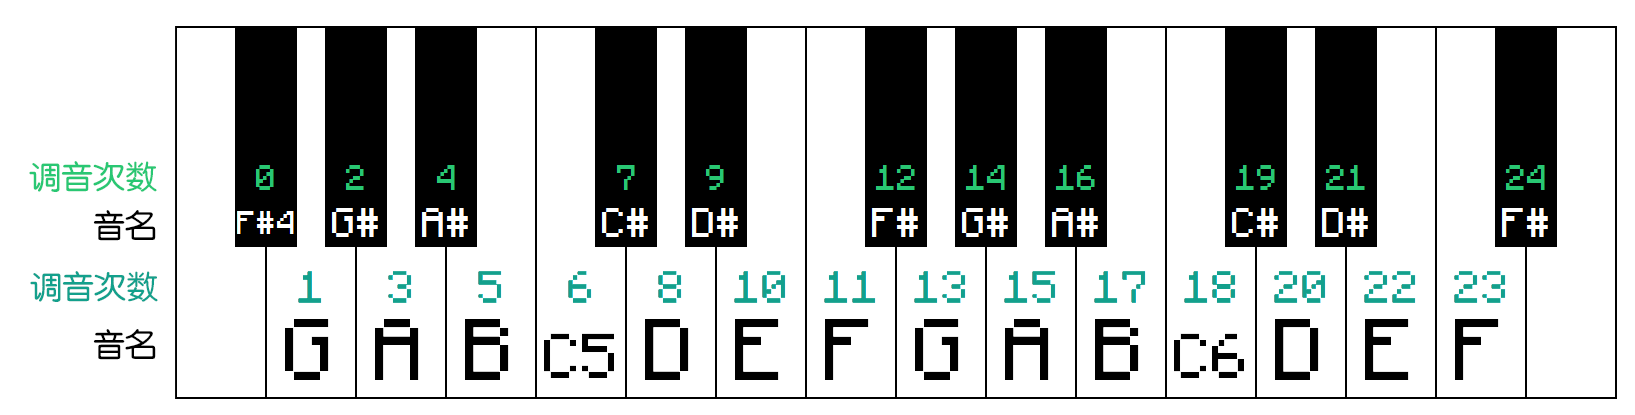 在mc原版中,音符盒(钢琴音色)的音域为: f